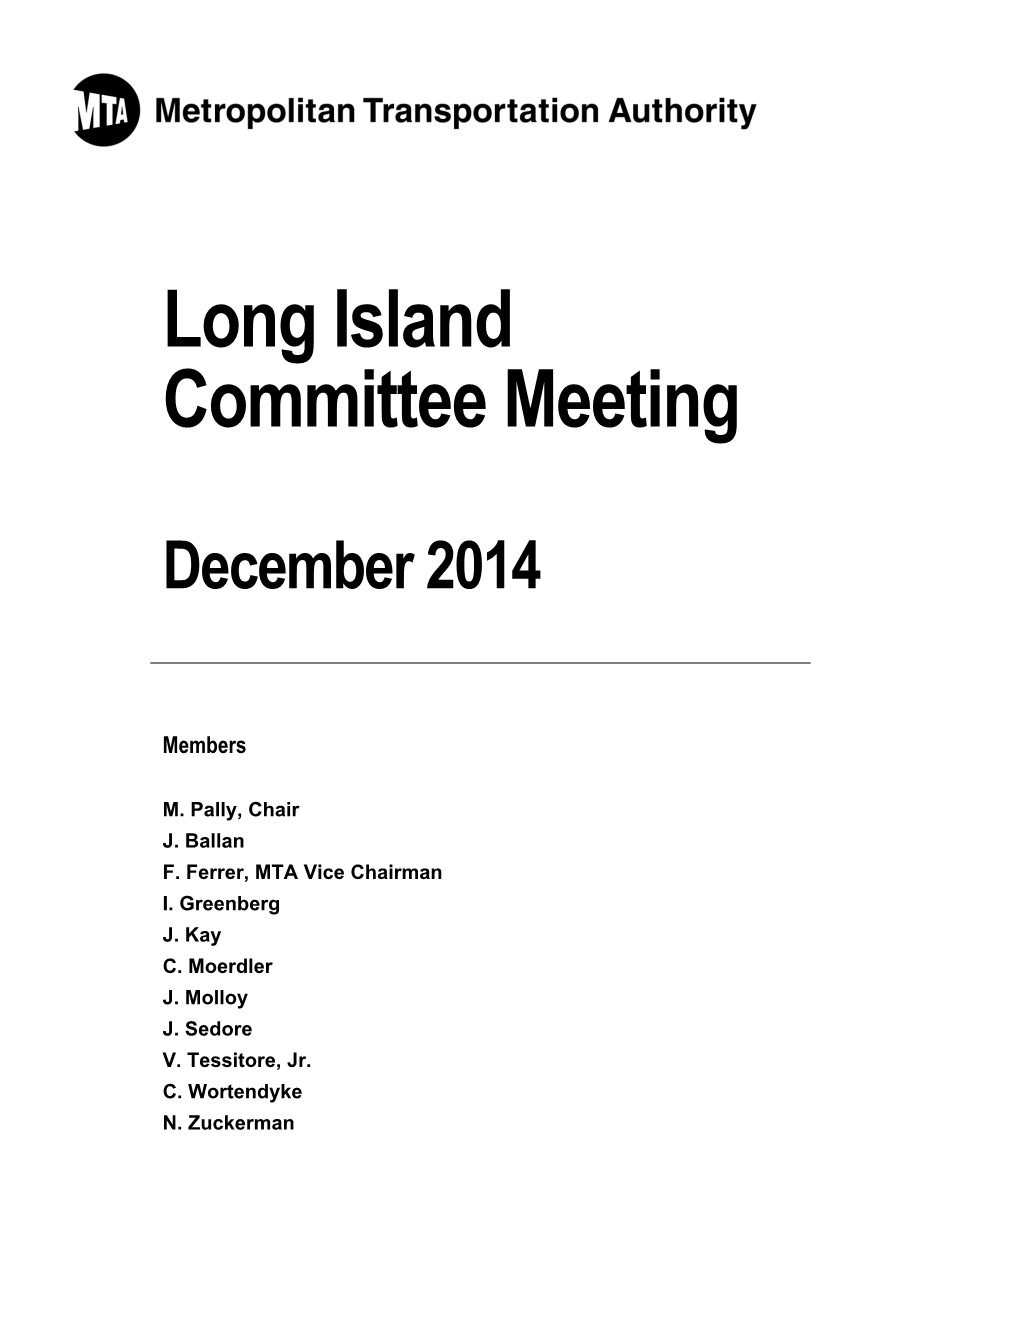 Long Island Committee Meeting